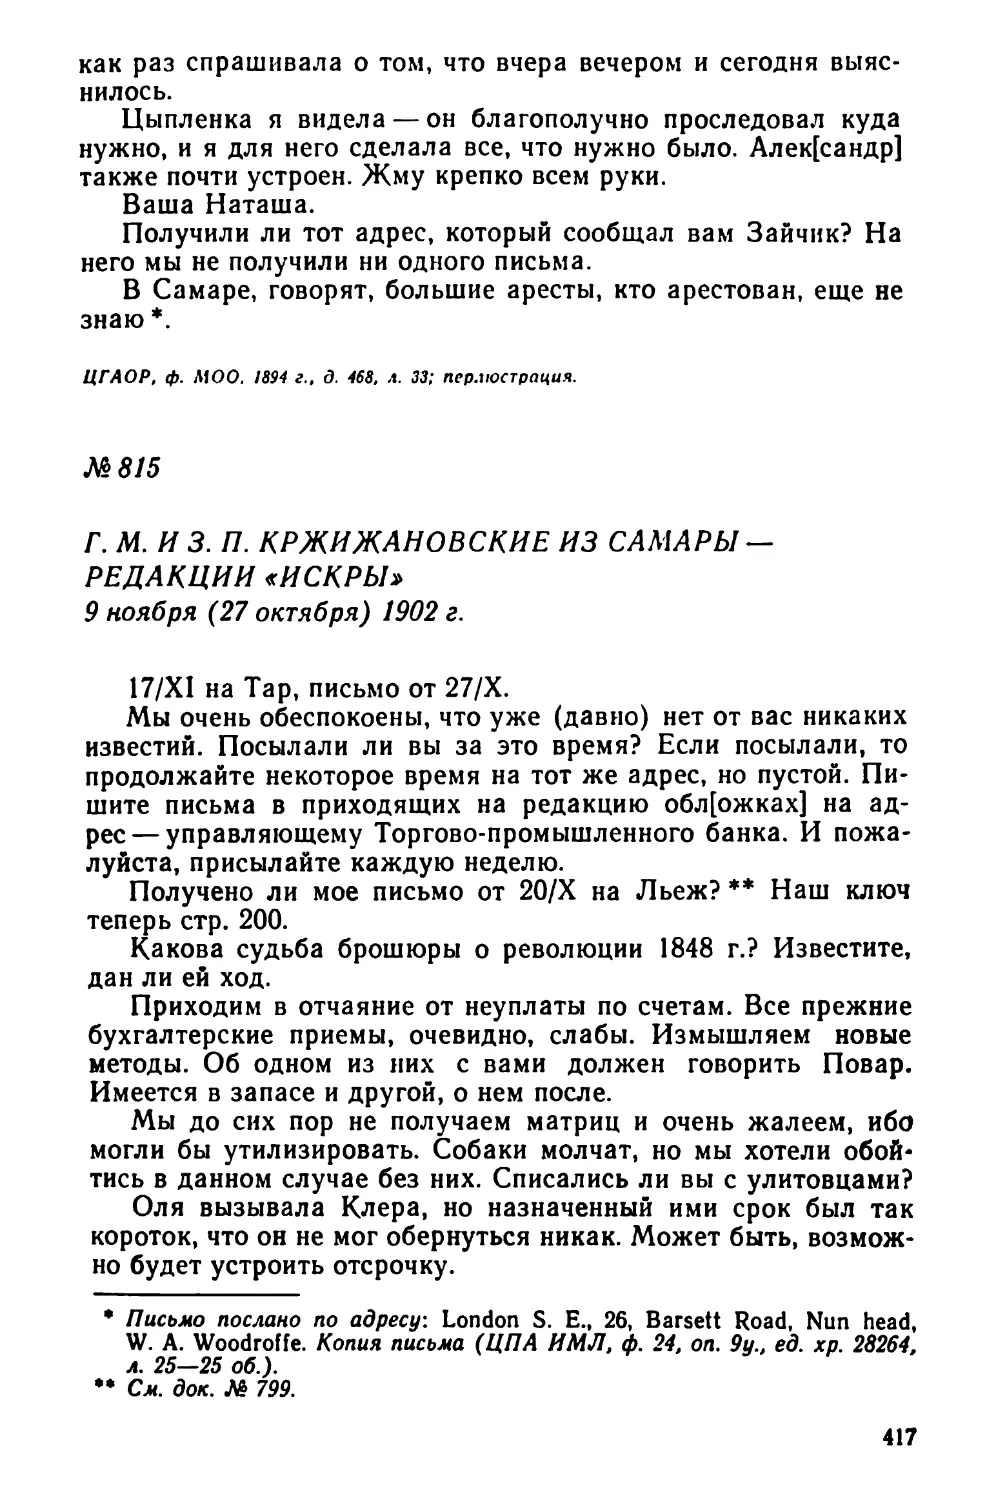 № 815 Г. М. и 3. П. Кржижановские из Самары — редакции «Искры». 9 ноября